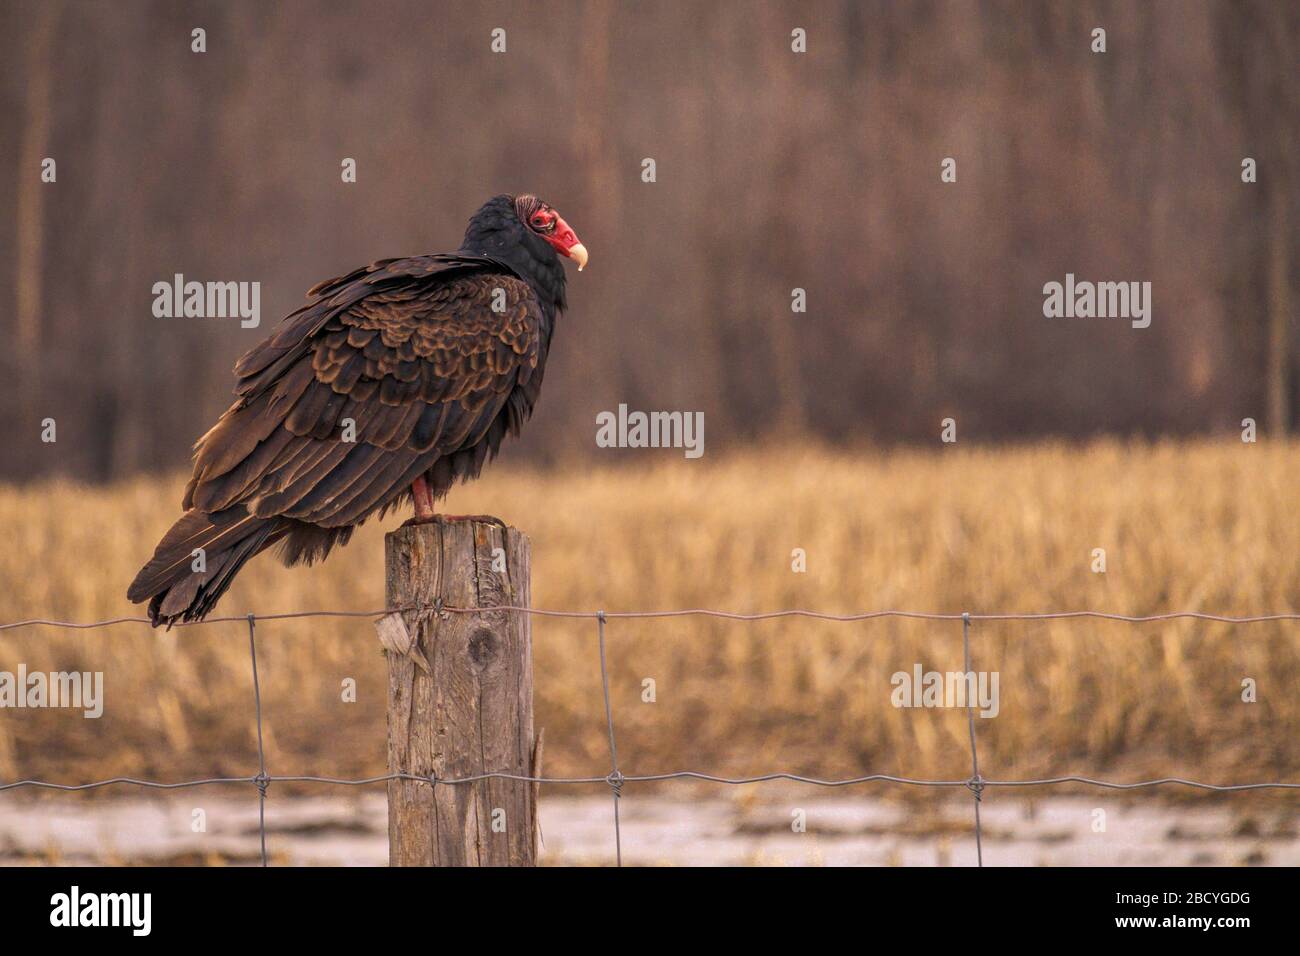 Ein wilder truthahngeier, ein schreckender Vogel in der Familie der Geier der neuen Welt, thront auf einem Holzfenposten vor einem Feld und Bäumen. Stockfoto